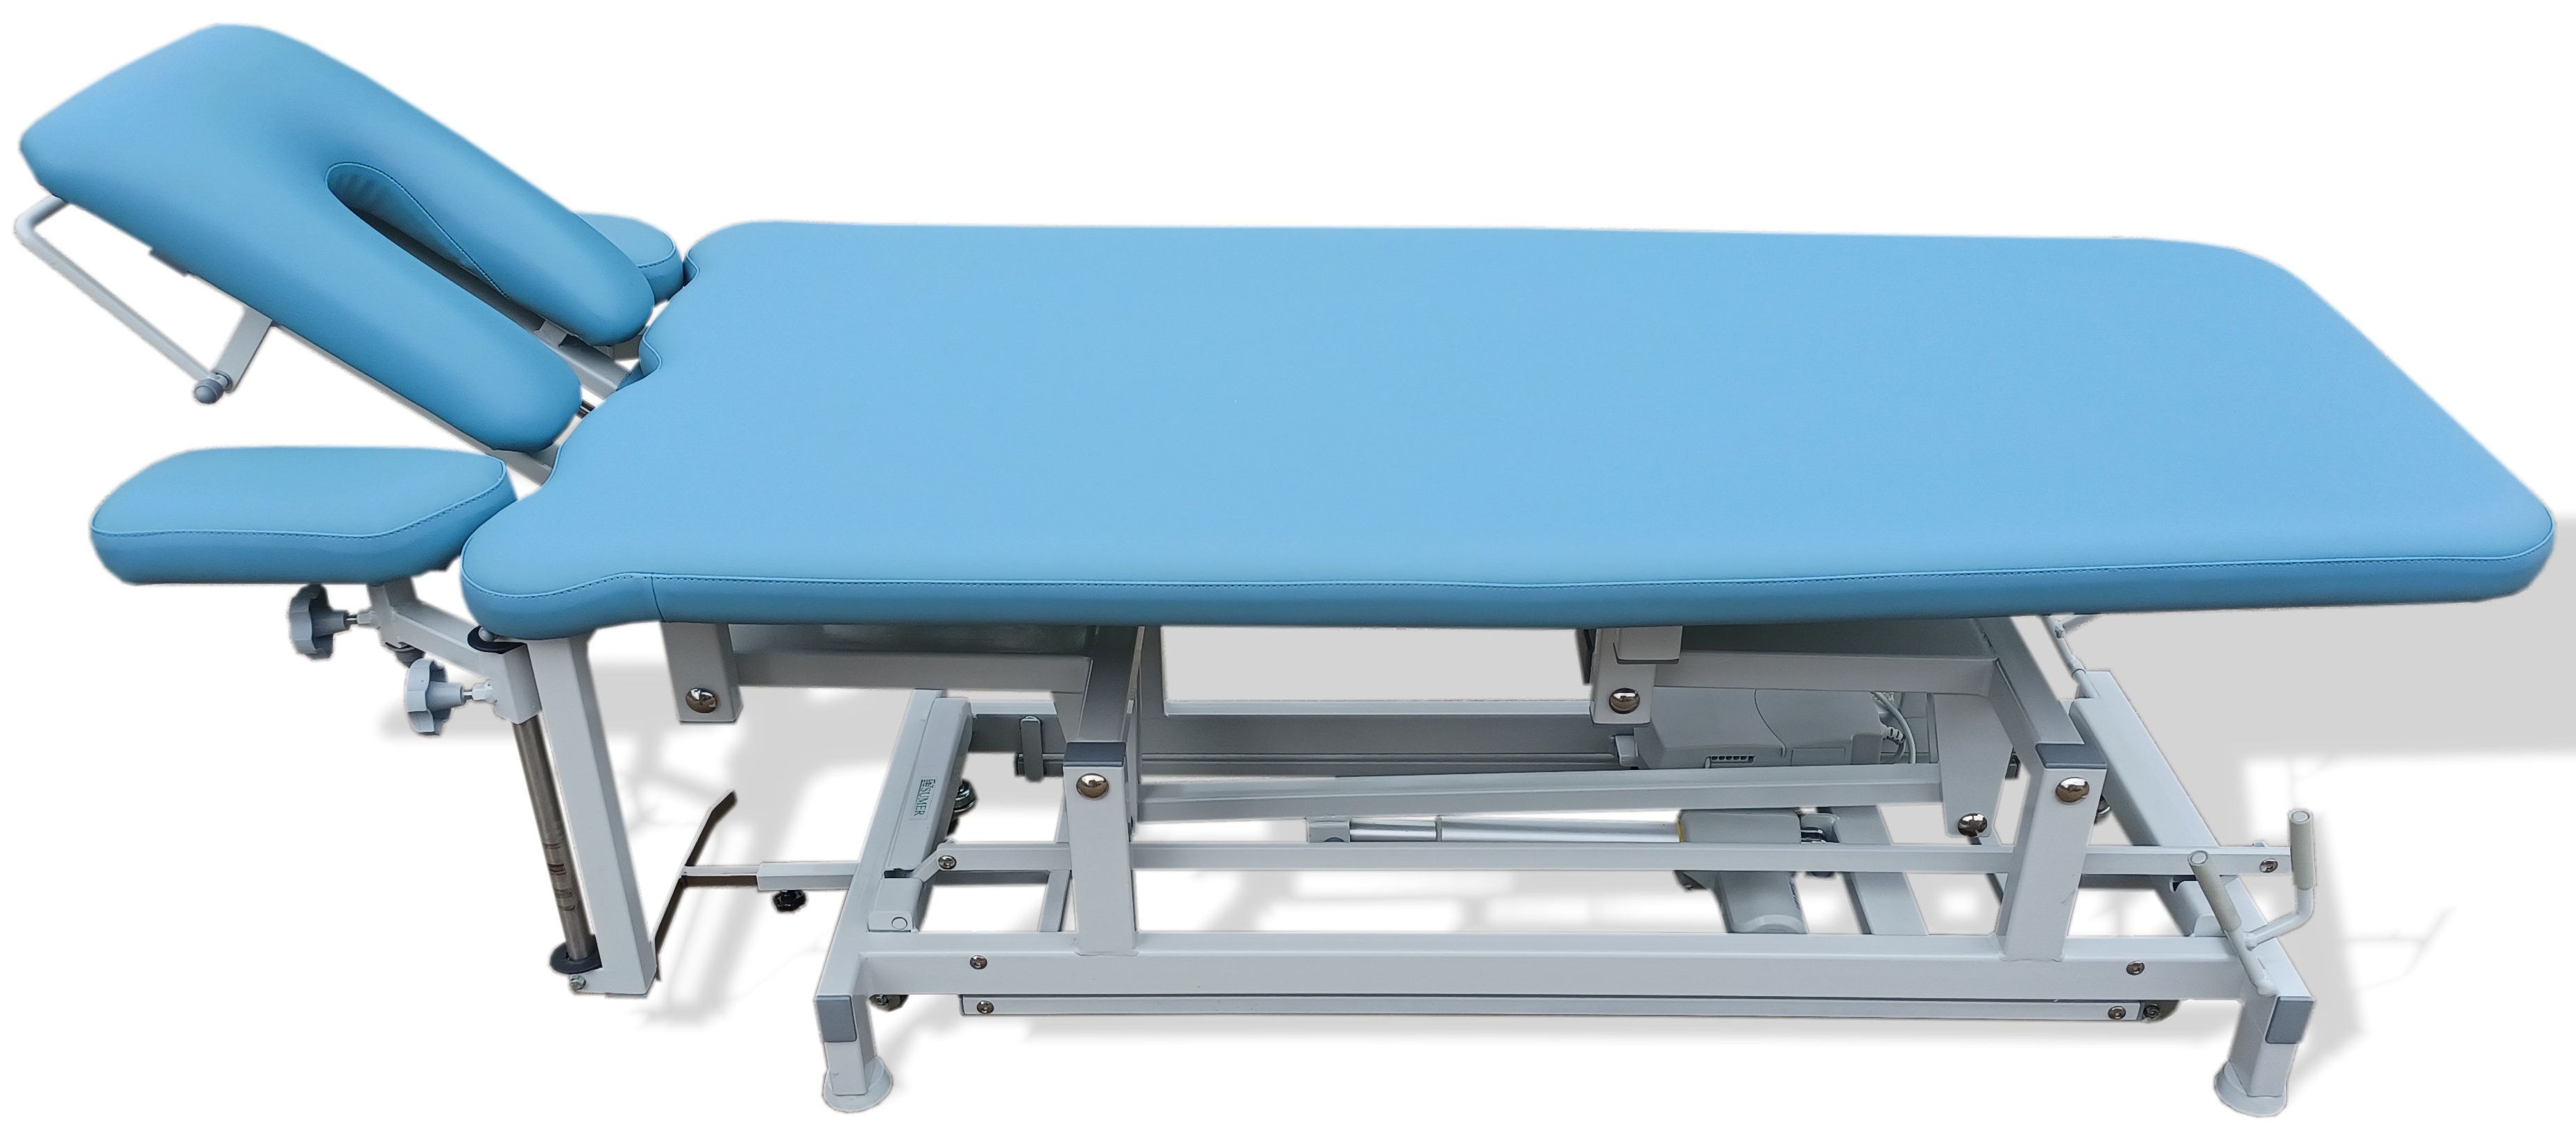 Specyfikacja: elektryczny stół rehabilitacyjny Sumer SRE-R Special Edition